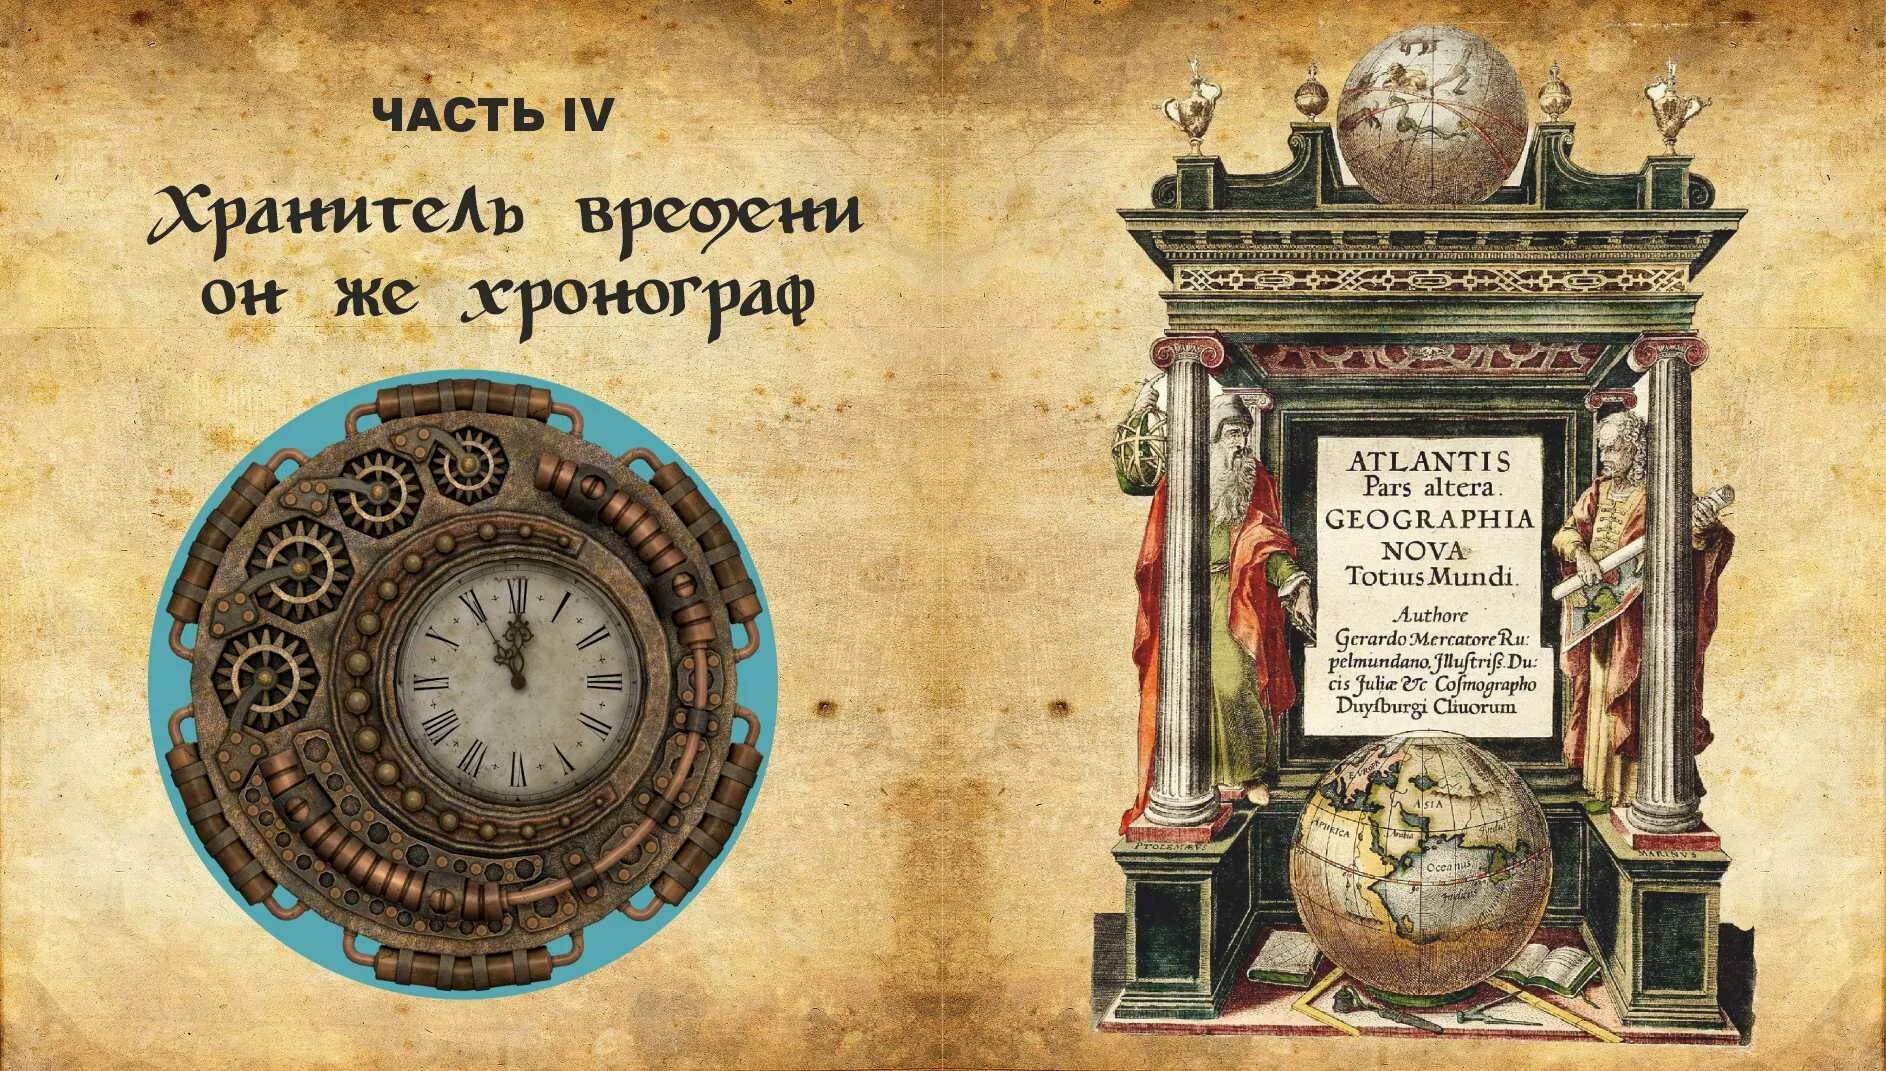 Чья история стала основой фэнтези хранитель времени. Хранитель времени часы. Хранитель времени прибор. Хранитель времени книга. Знак хранителя времени.